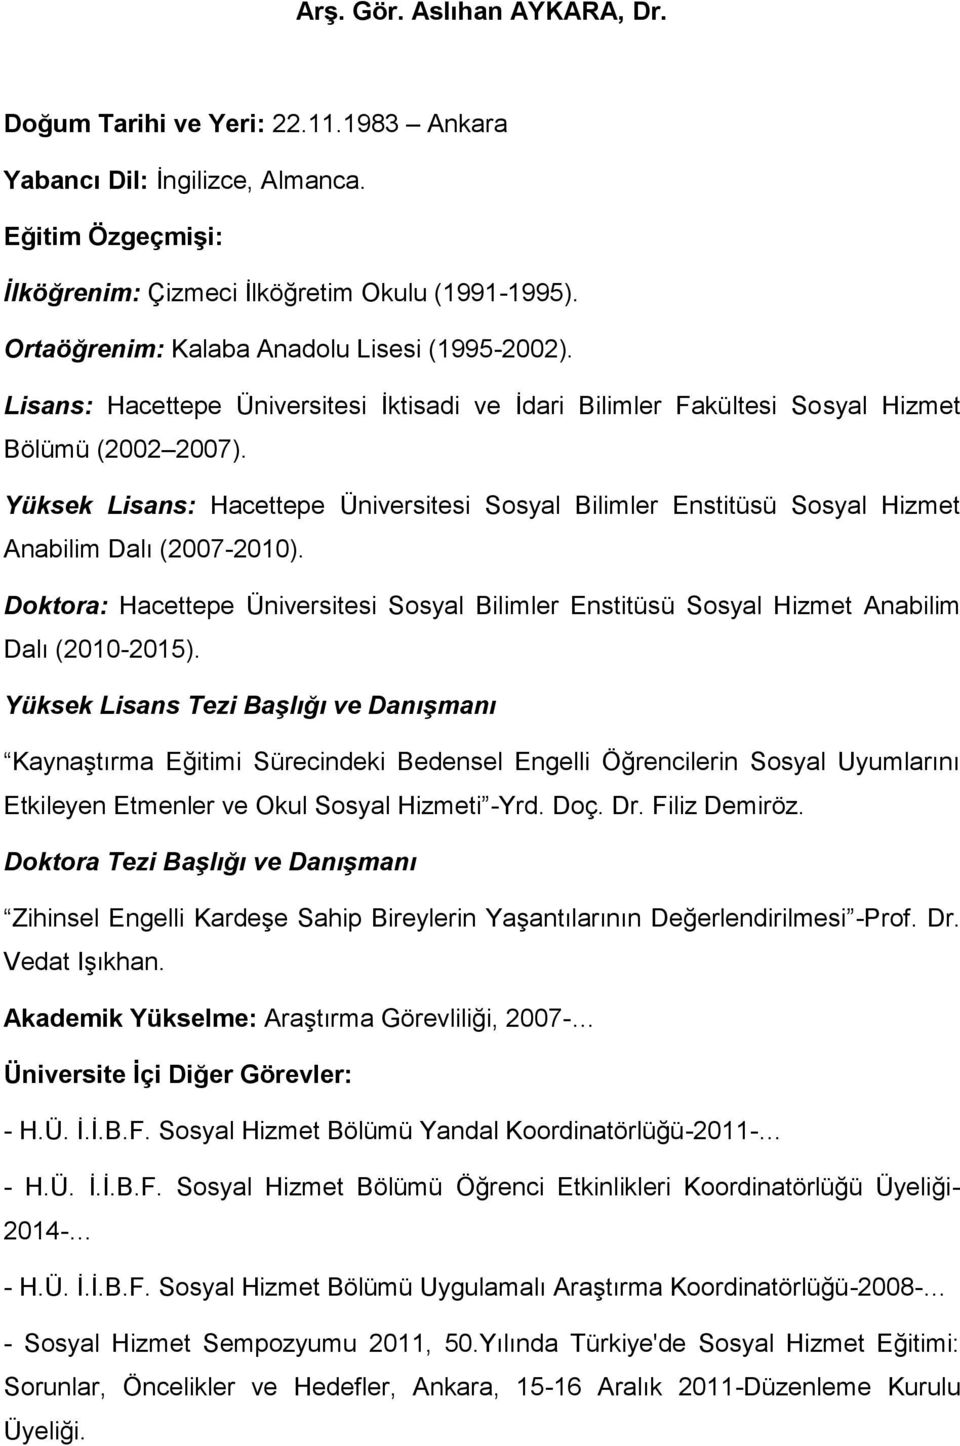 Yüksek Lisans: Hacettepe Üniversitesi Sosyal Bilimler Enstitüsü Sosyal Hizmet Anabilim Dalı (2007-2010).